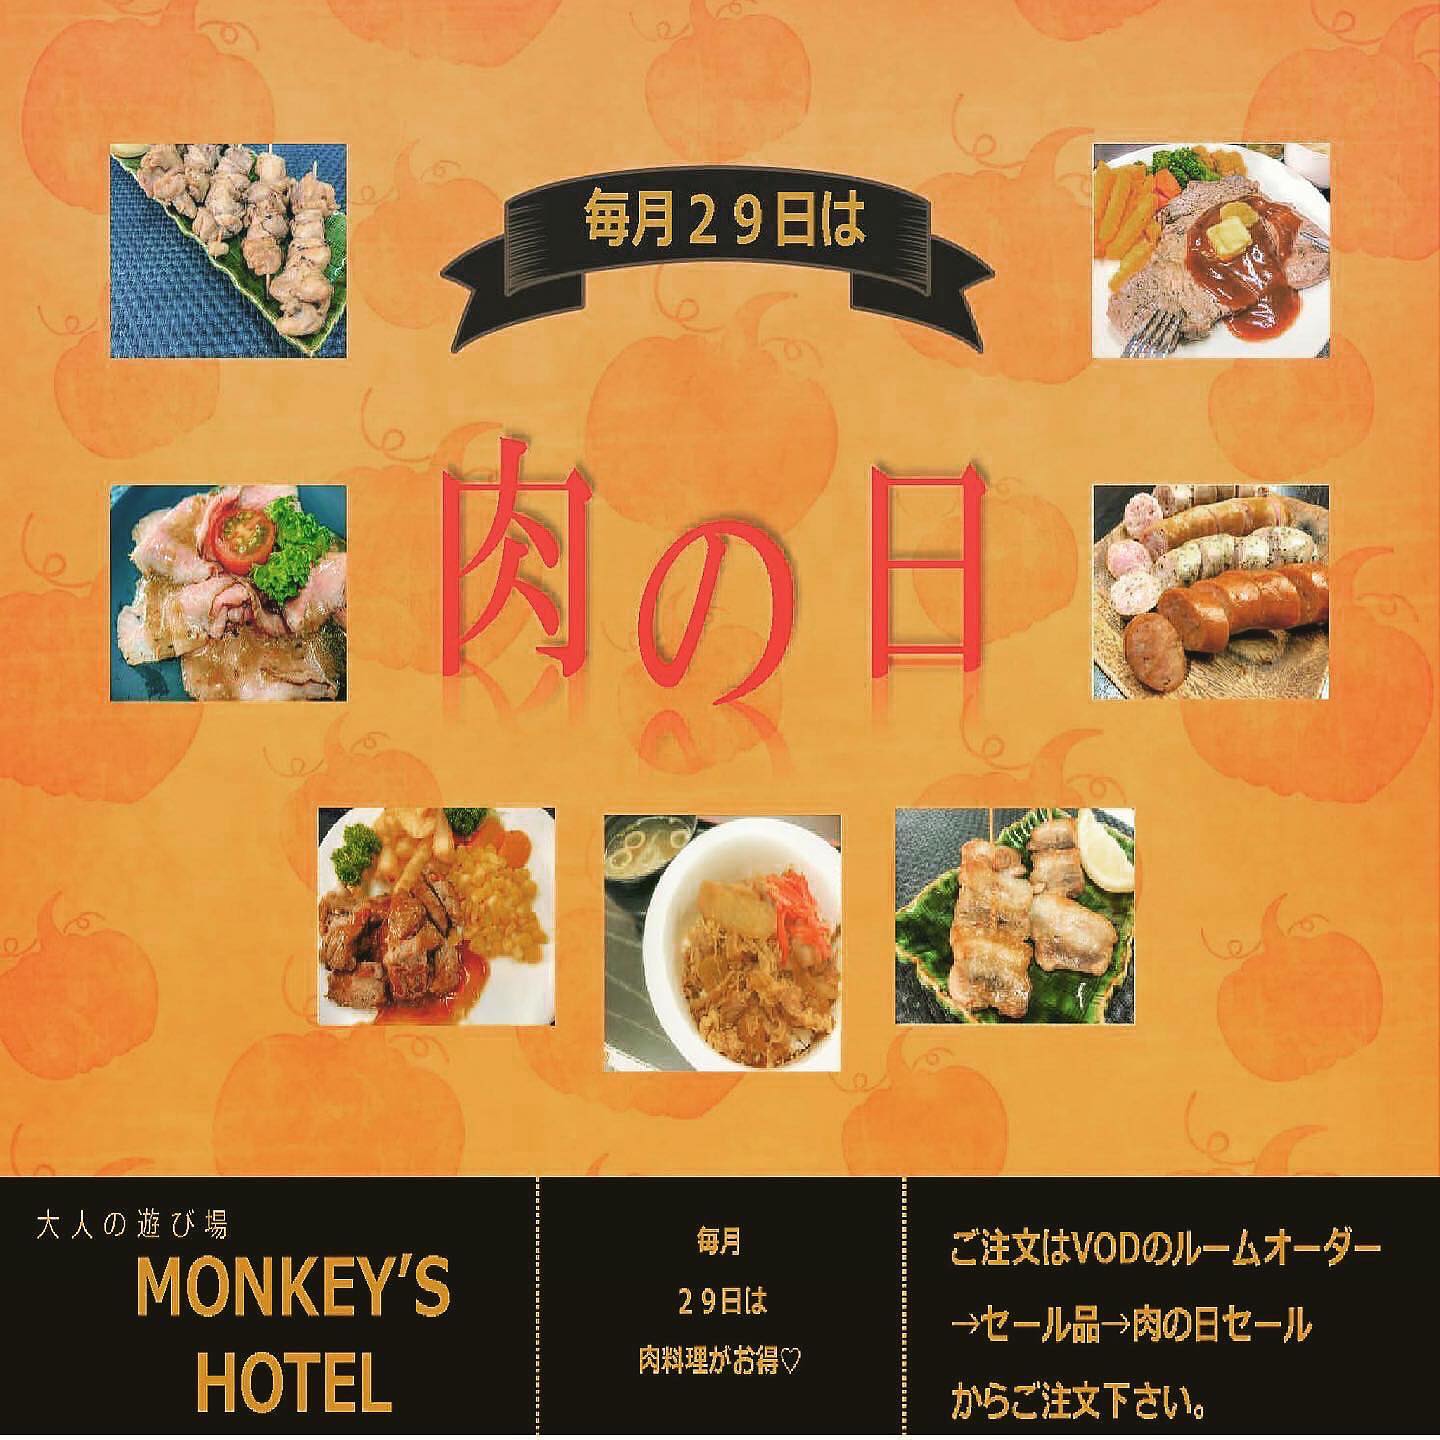 明日は毎月恒例、肉の日www日付変わって0:00から肉がお手頃価格皆んな今日のお泊り明日のランチはMONKEY'SだねＨＰhttp://hotel-monkeys.fanTwitterhttps://twitter.com/_monkeeeeeys...#沖縄のインフルエンサーになりたい#コスプレがいちばん多いホテル#ノリのホテル#MONKEYS#HOTELMONKEYS#hotel#ホテル#okinawa#沖縄#期間限定#グランドオープン#沖縄グルメ#レジャーホテル#今だけ#限定#sky#インスタ映え#ばえスポット#幸せ時間#ラブホテル#沖縄市#沖縄市ラブホテル#楽しい時間#モンキーズホテル#ホテルモンキーズ#モンキーズ#セール#monkeyshotel